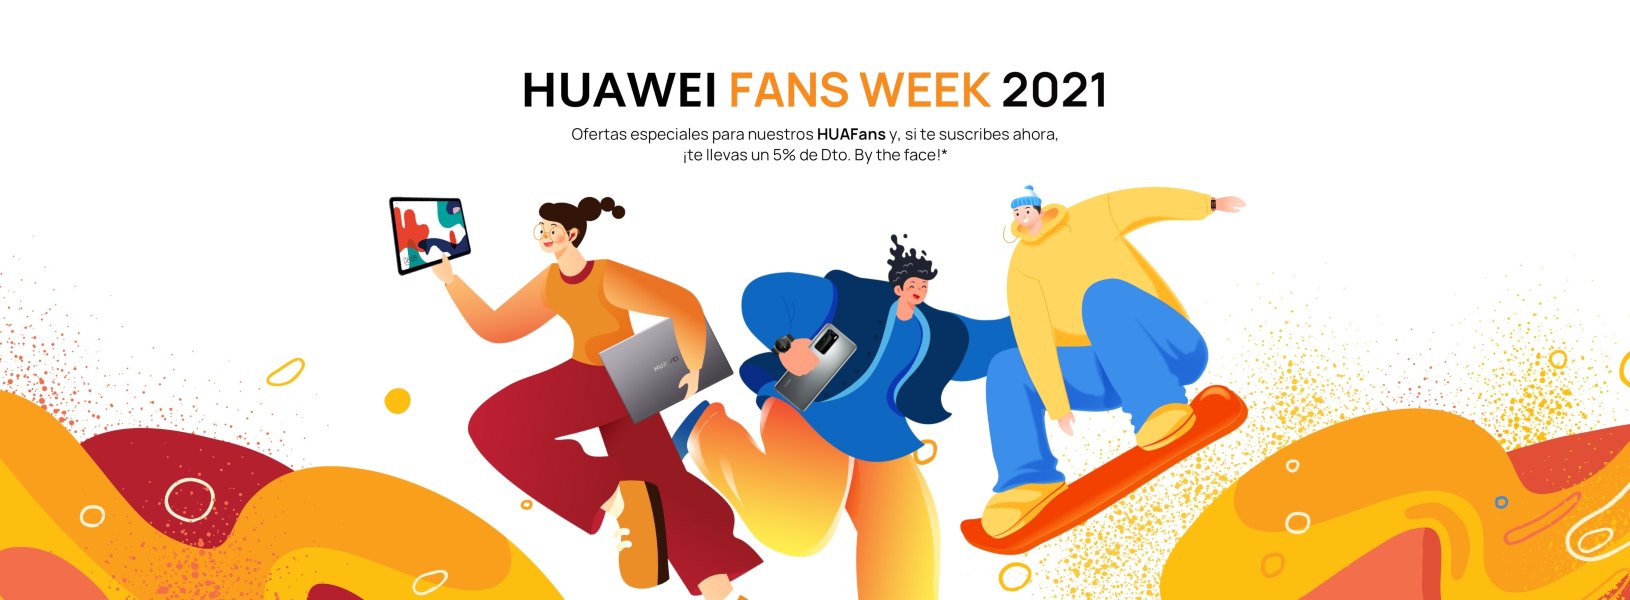 HUAWEI Fans Week 2021 premios y grandes ofertas para los fans